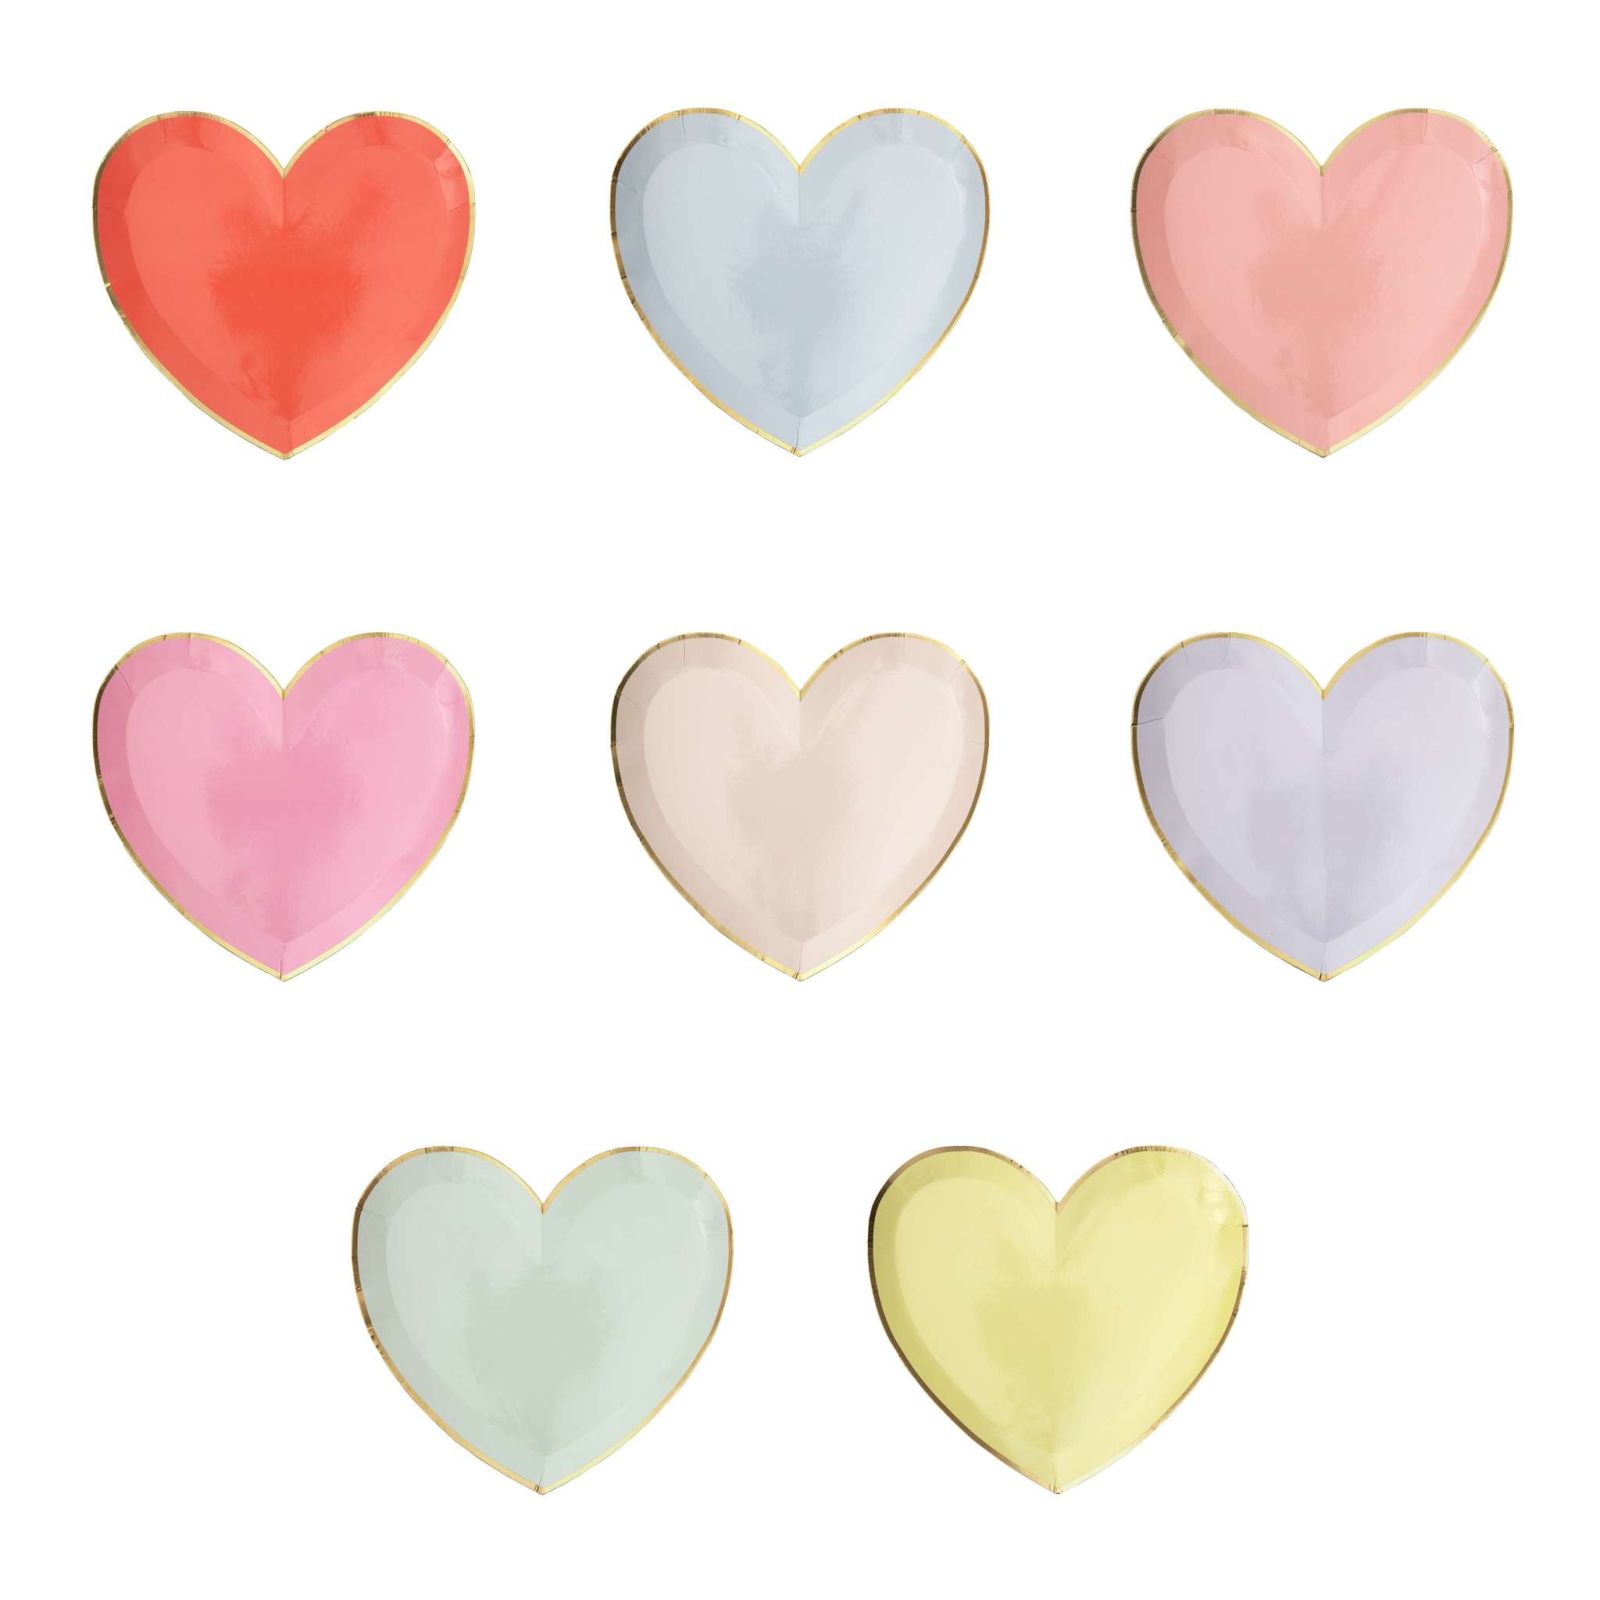 Тарелки Meri Meri Палитра в форме сердца пастельные маленькие